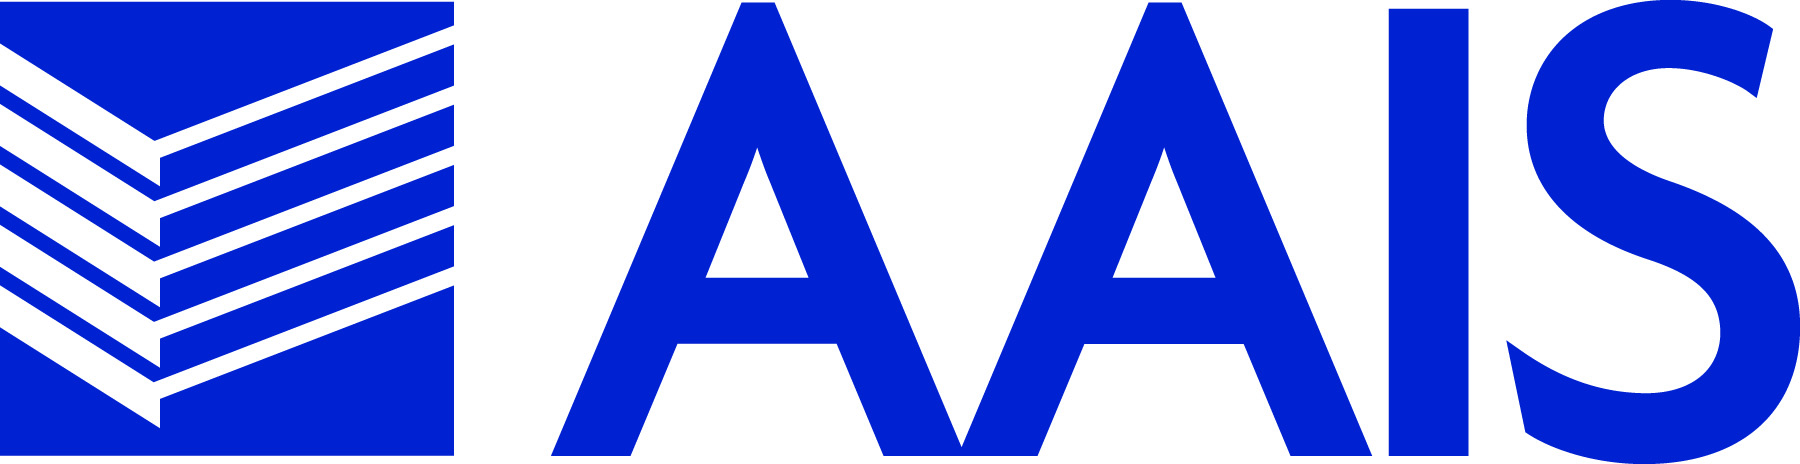 AAIS_logo_CMYK